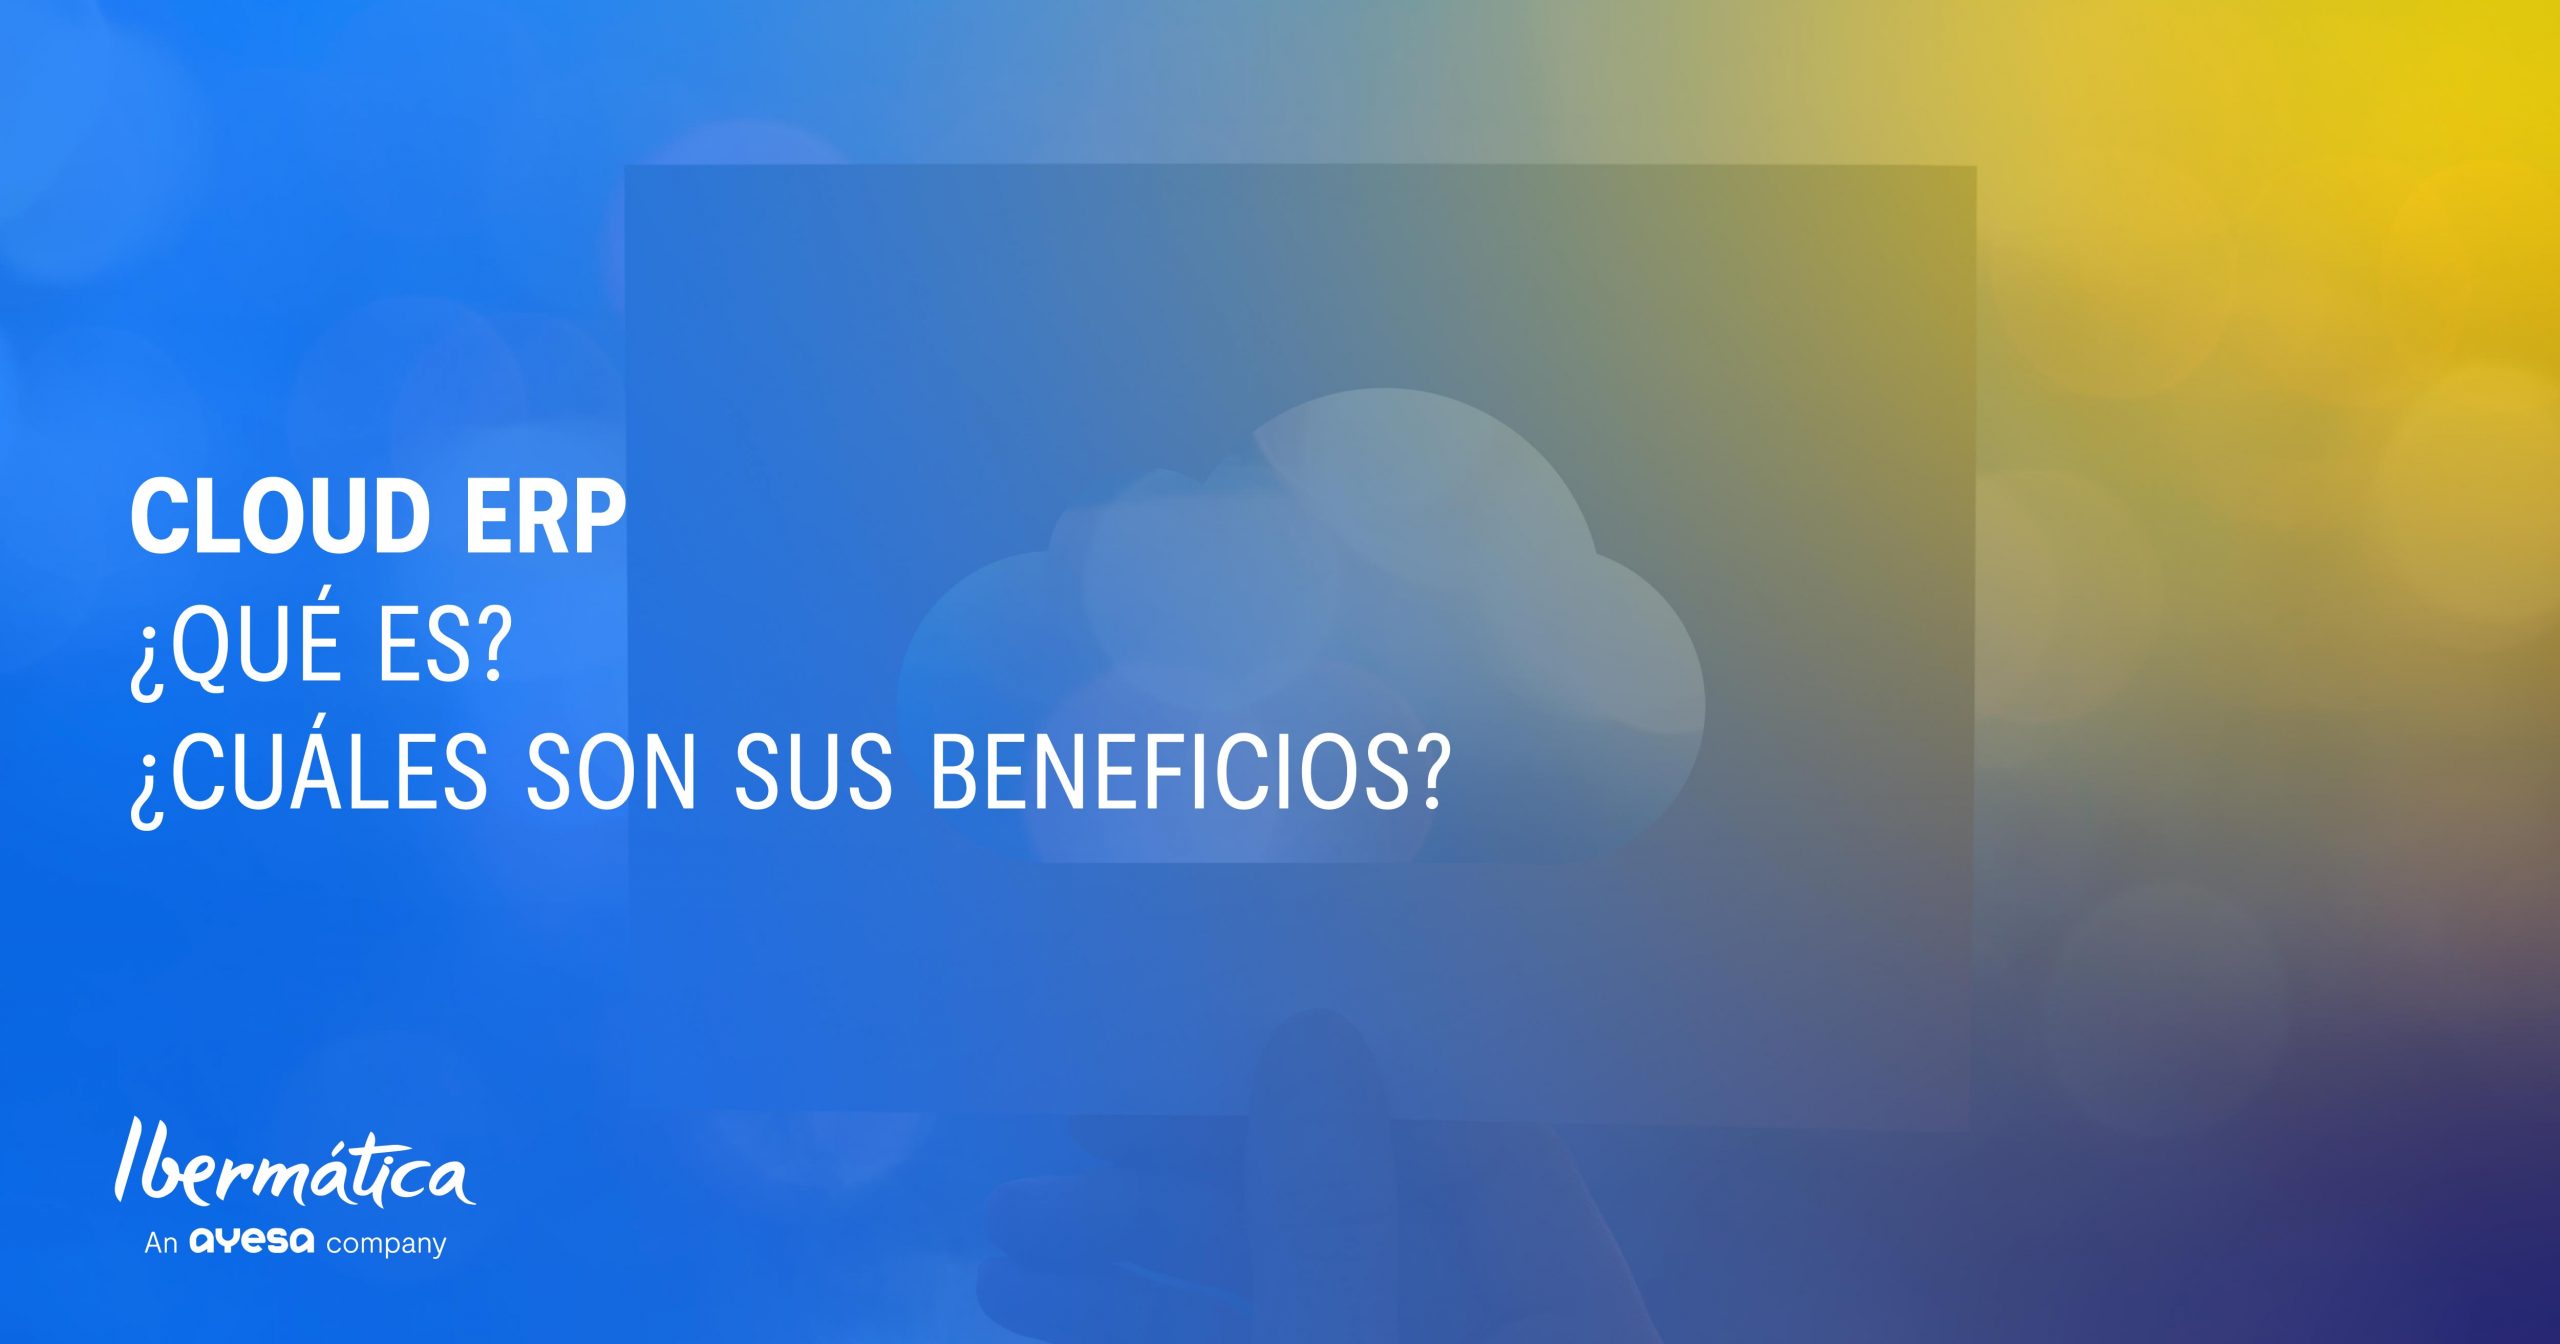 Cloud ERP: ¿Qué es? ¿Qué tecnología usa? ¿Cuáles son los beneficios de tener los datos en la nube?